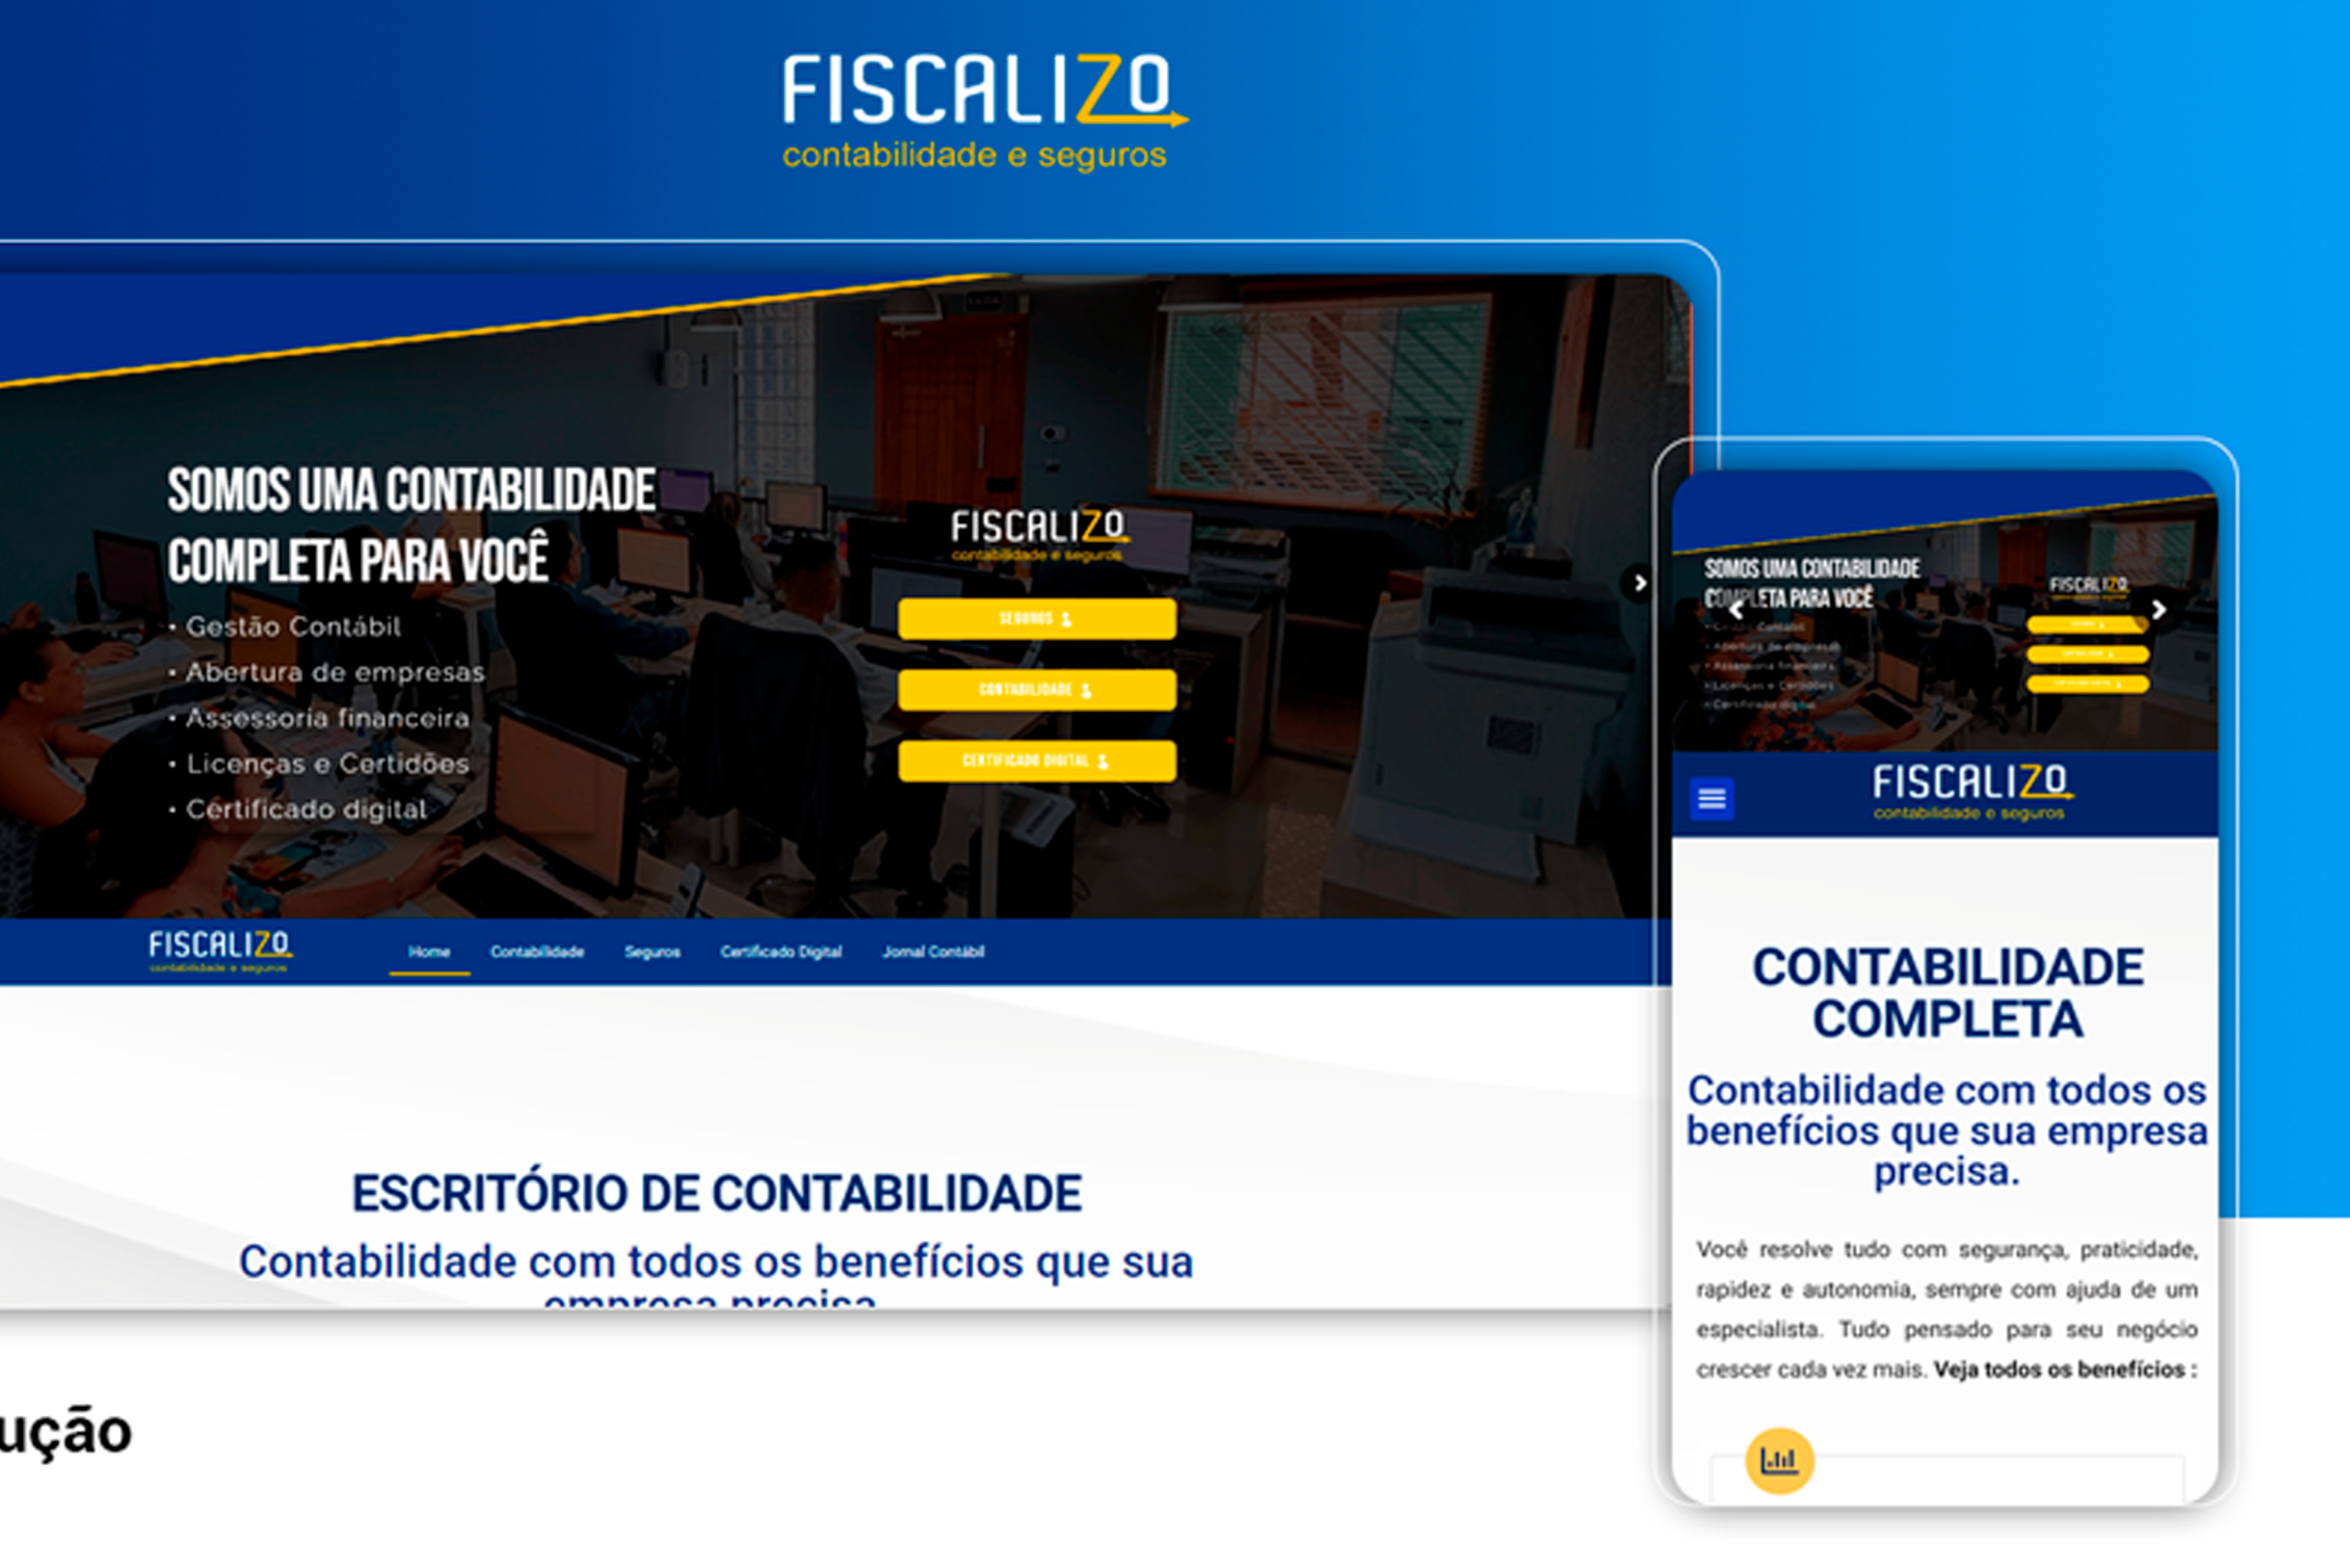 Marketing Para Contabilidade | Case | Fiscalizo Conheça os trabalhos que nossa agência de marketing fez para o escritório de contabilidade em São Paulo Fiscalizo Contabilidade e Seguros.